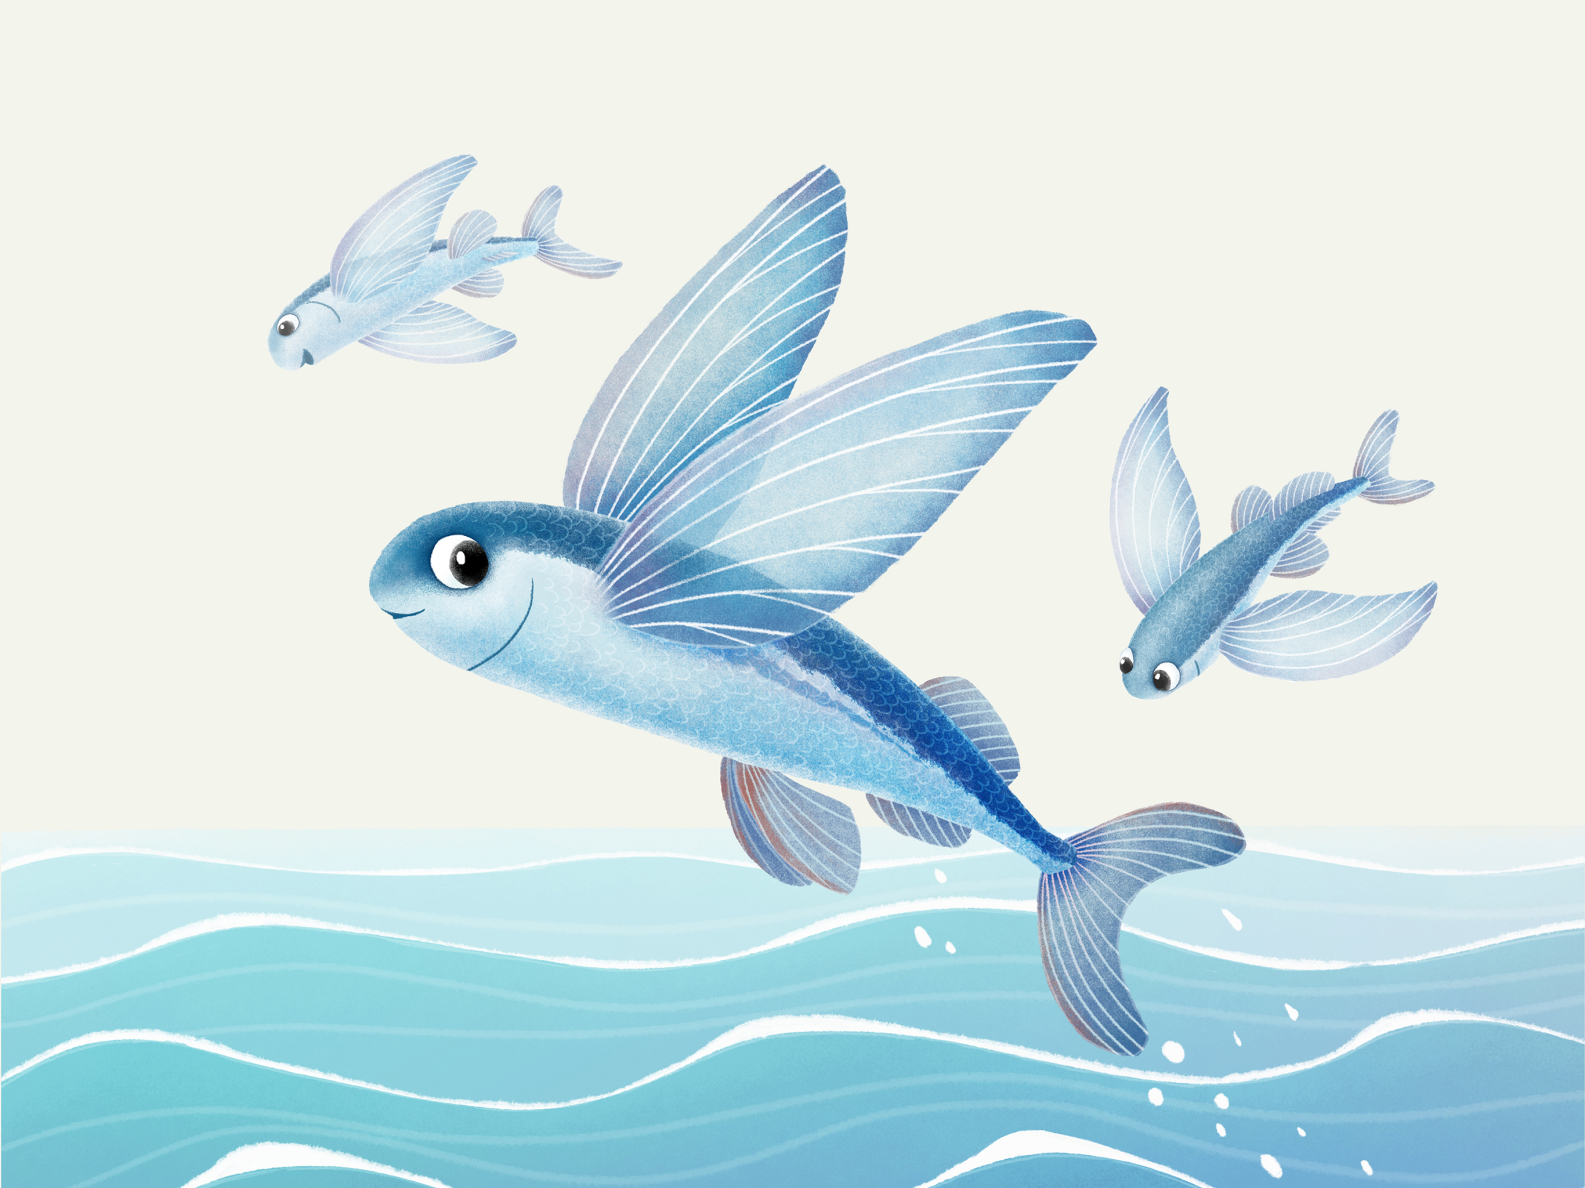 Flying fish by Julia Ezhova on Dribbble